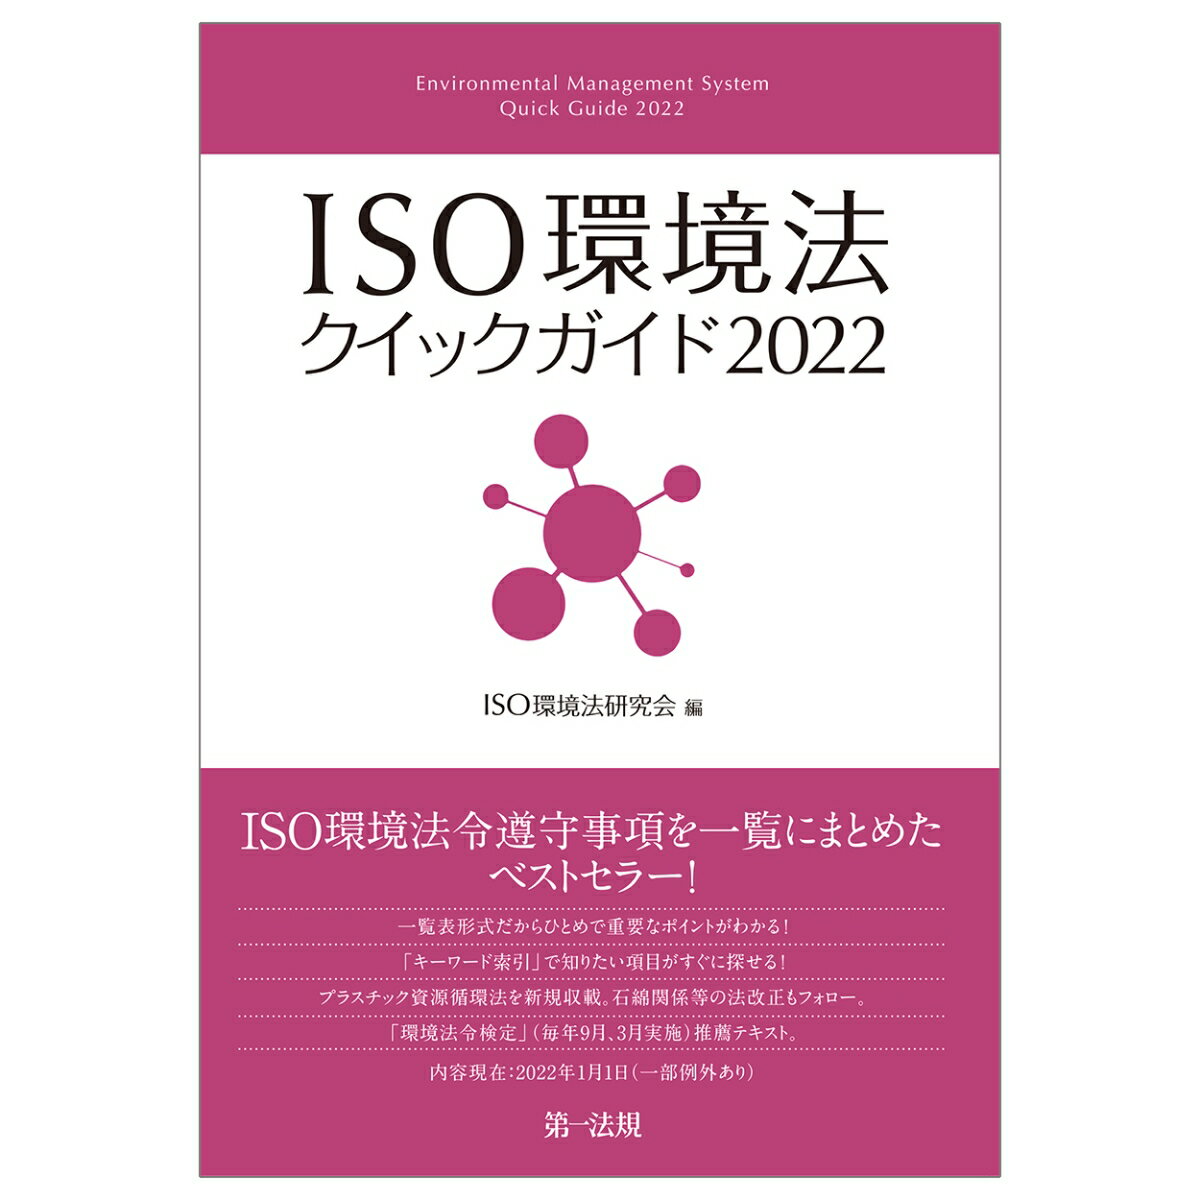 ISO環境法クイックガイド2022 